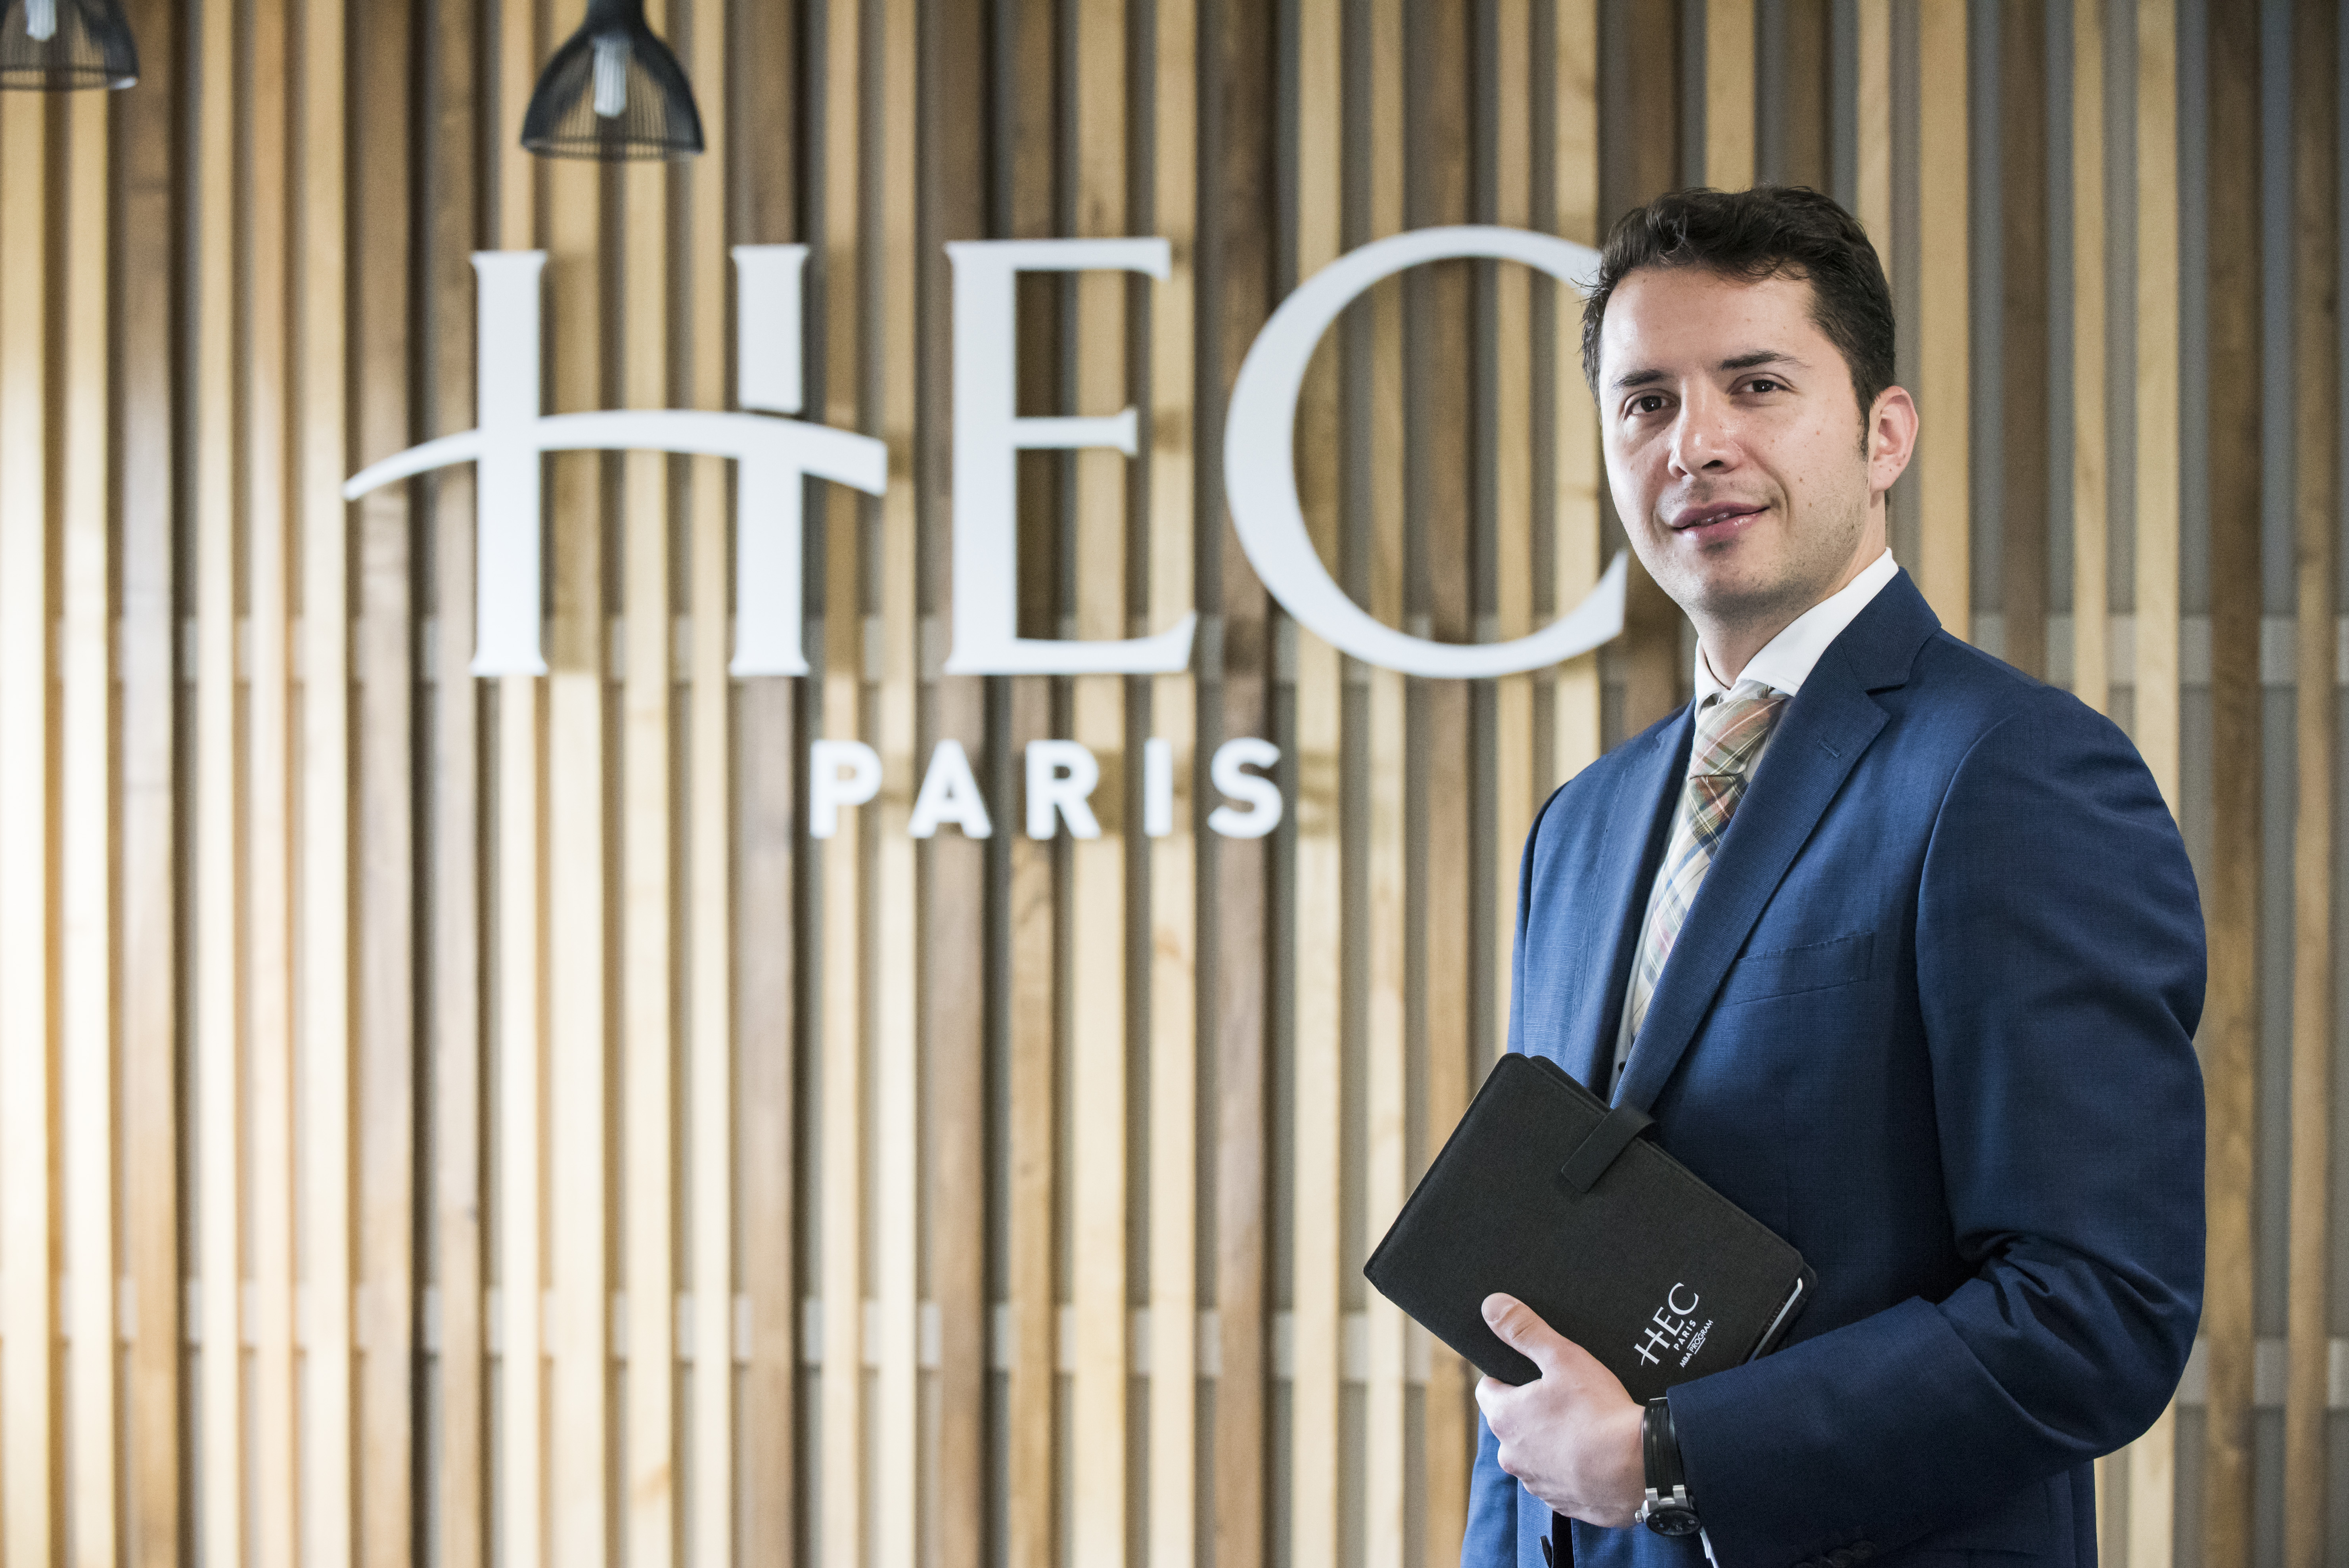 HEC Paris MBA student Renalto Castenda got a great job working at Deloitte